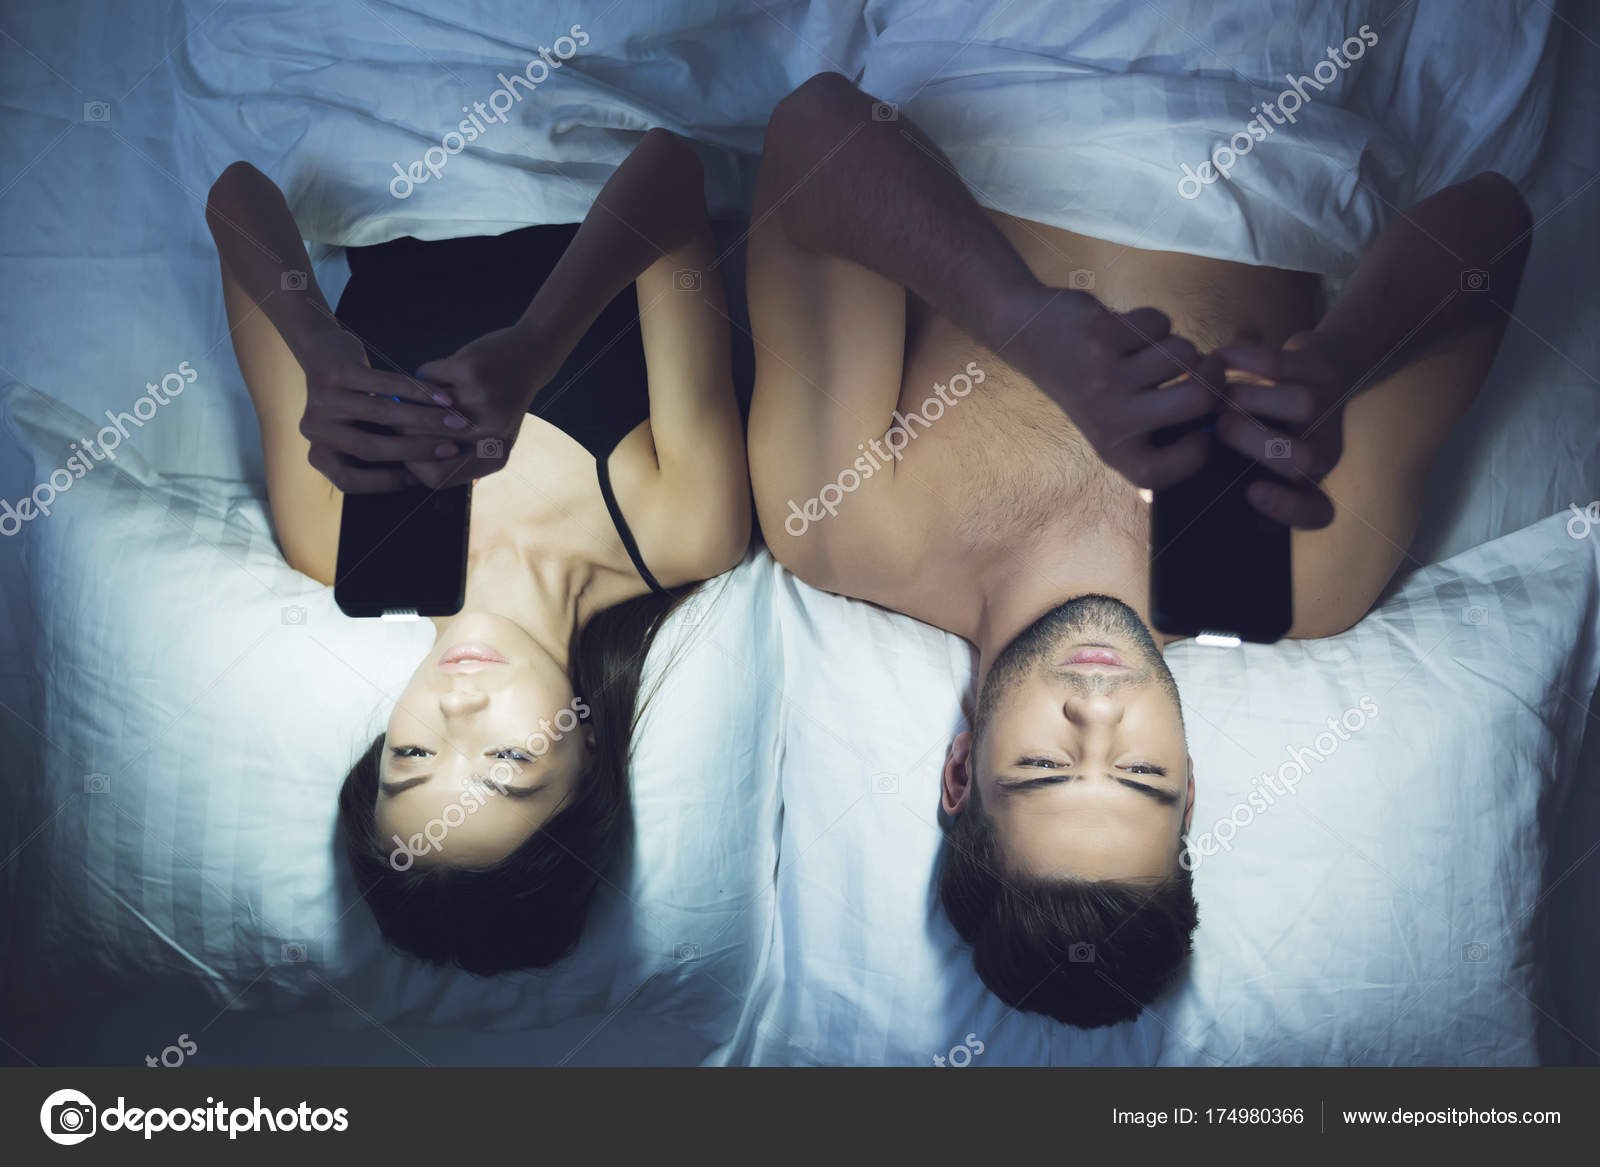 Мужчина и женщина лежат в кровати